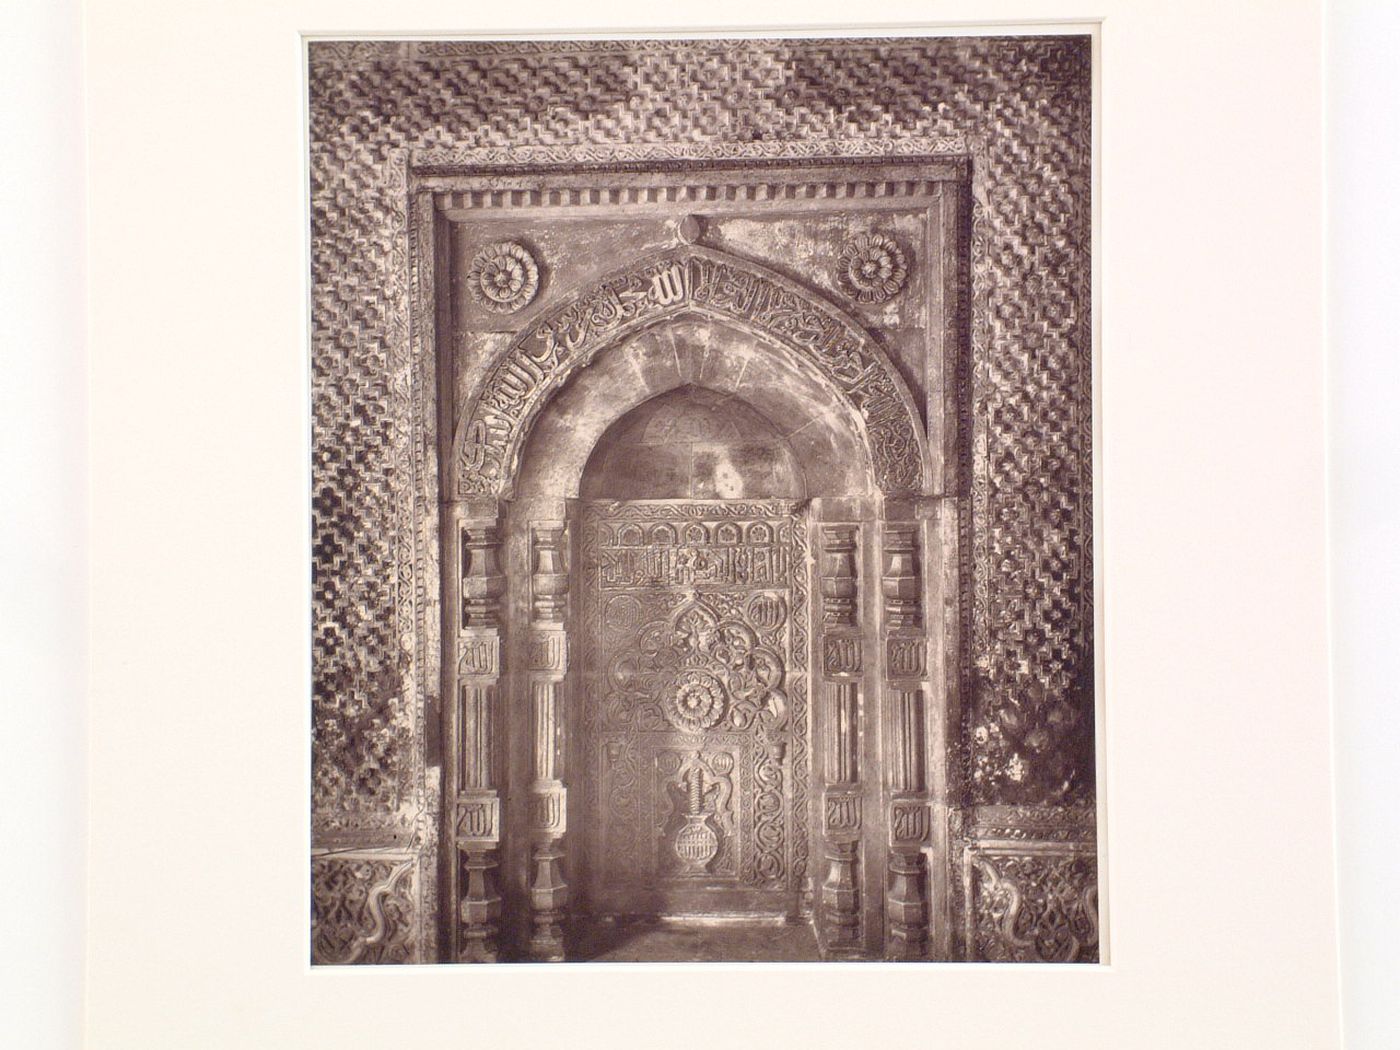 Interior view of Iman Zamin's Tomb showing a niche, Quwwat al-Islam [Might of Islam] Mosque Complex, Delhi, India